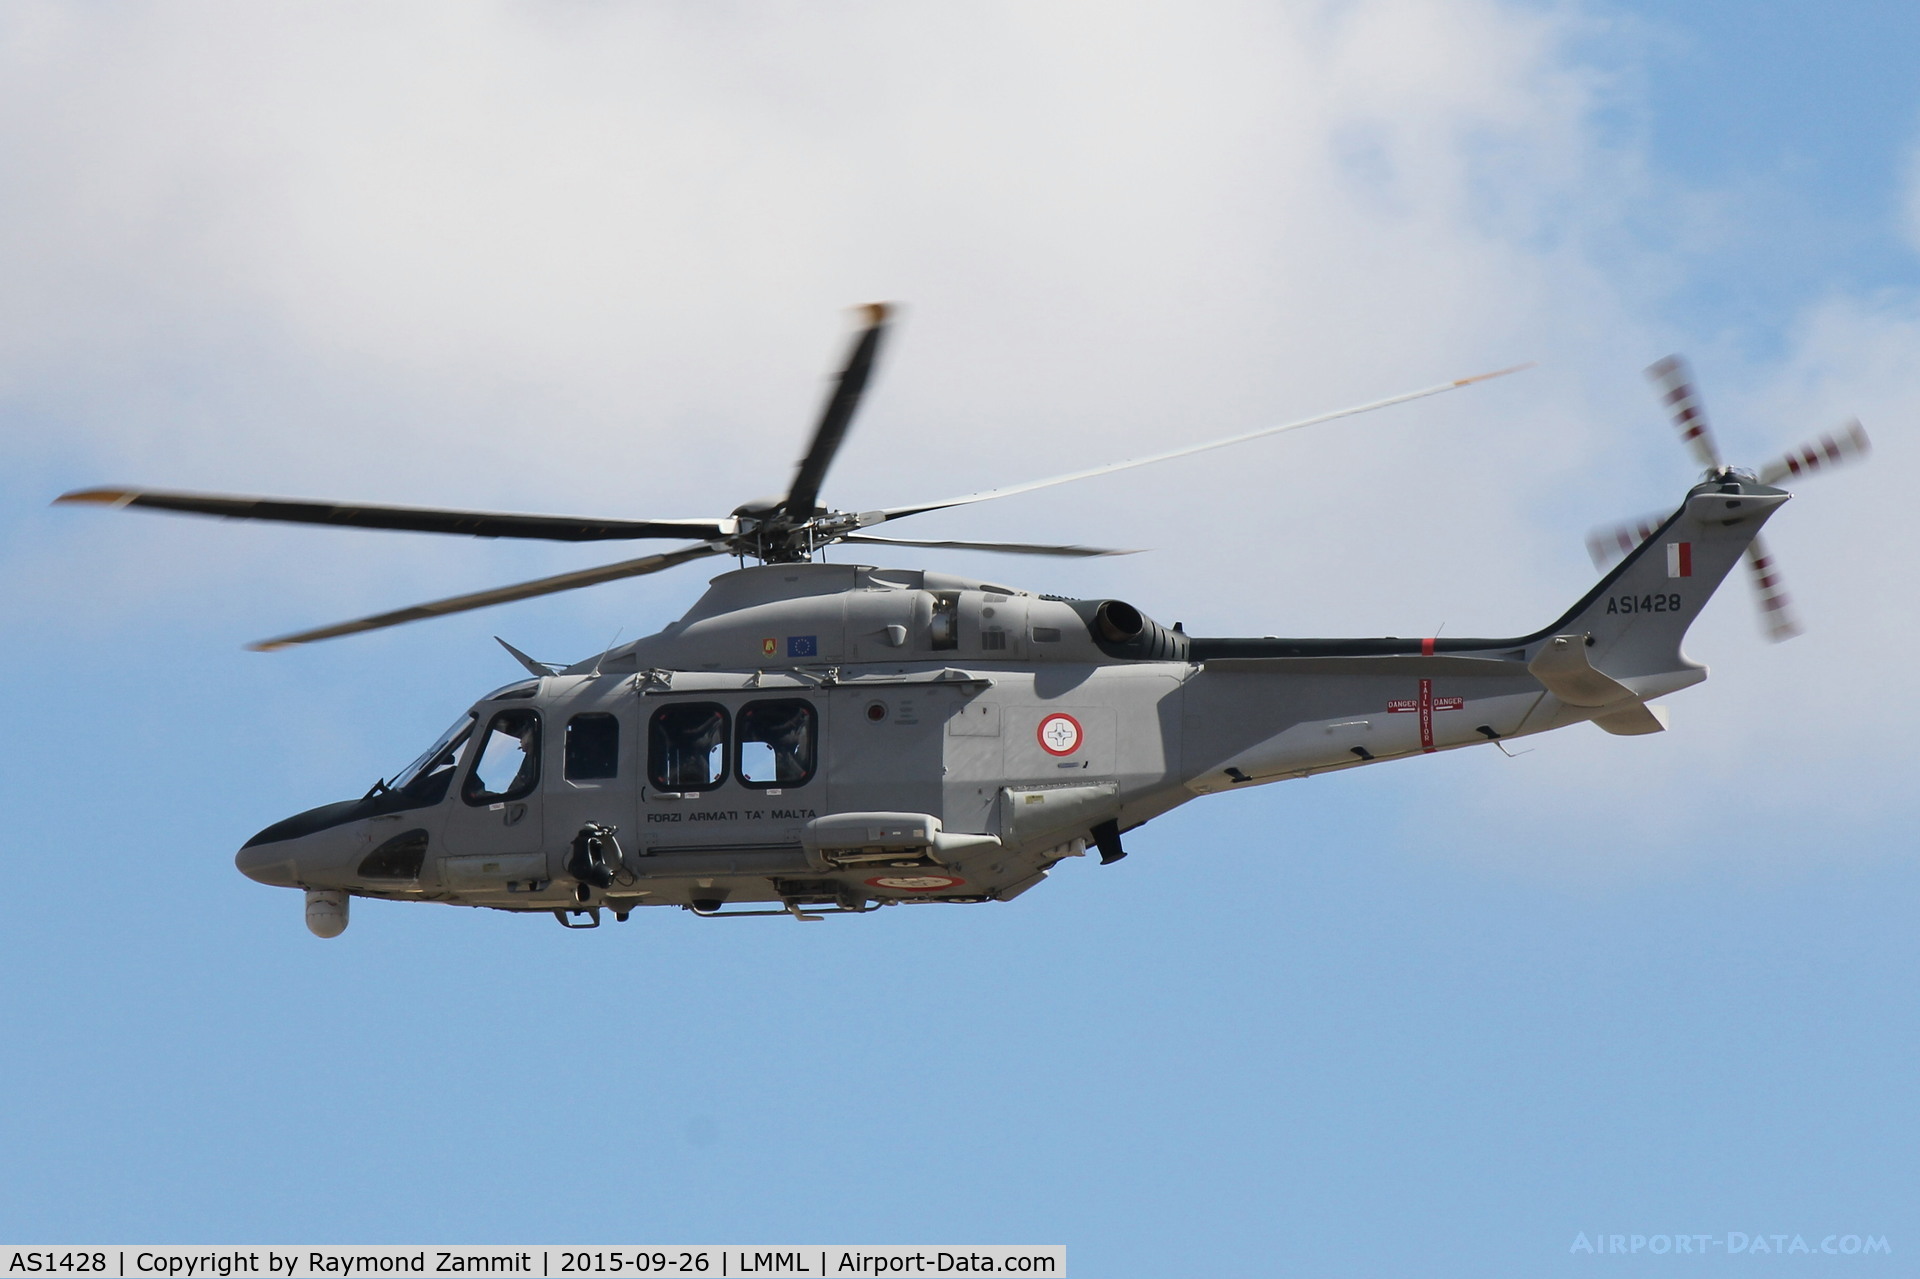 AS1428, 2014 AgustaWestland AW-139 C/N 31560, AgustaWestland AW-139 AS1428 Armed Forces of Malta